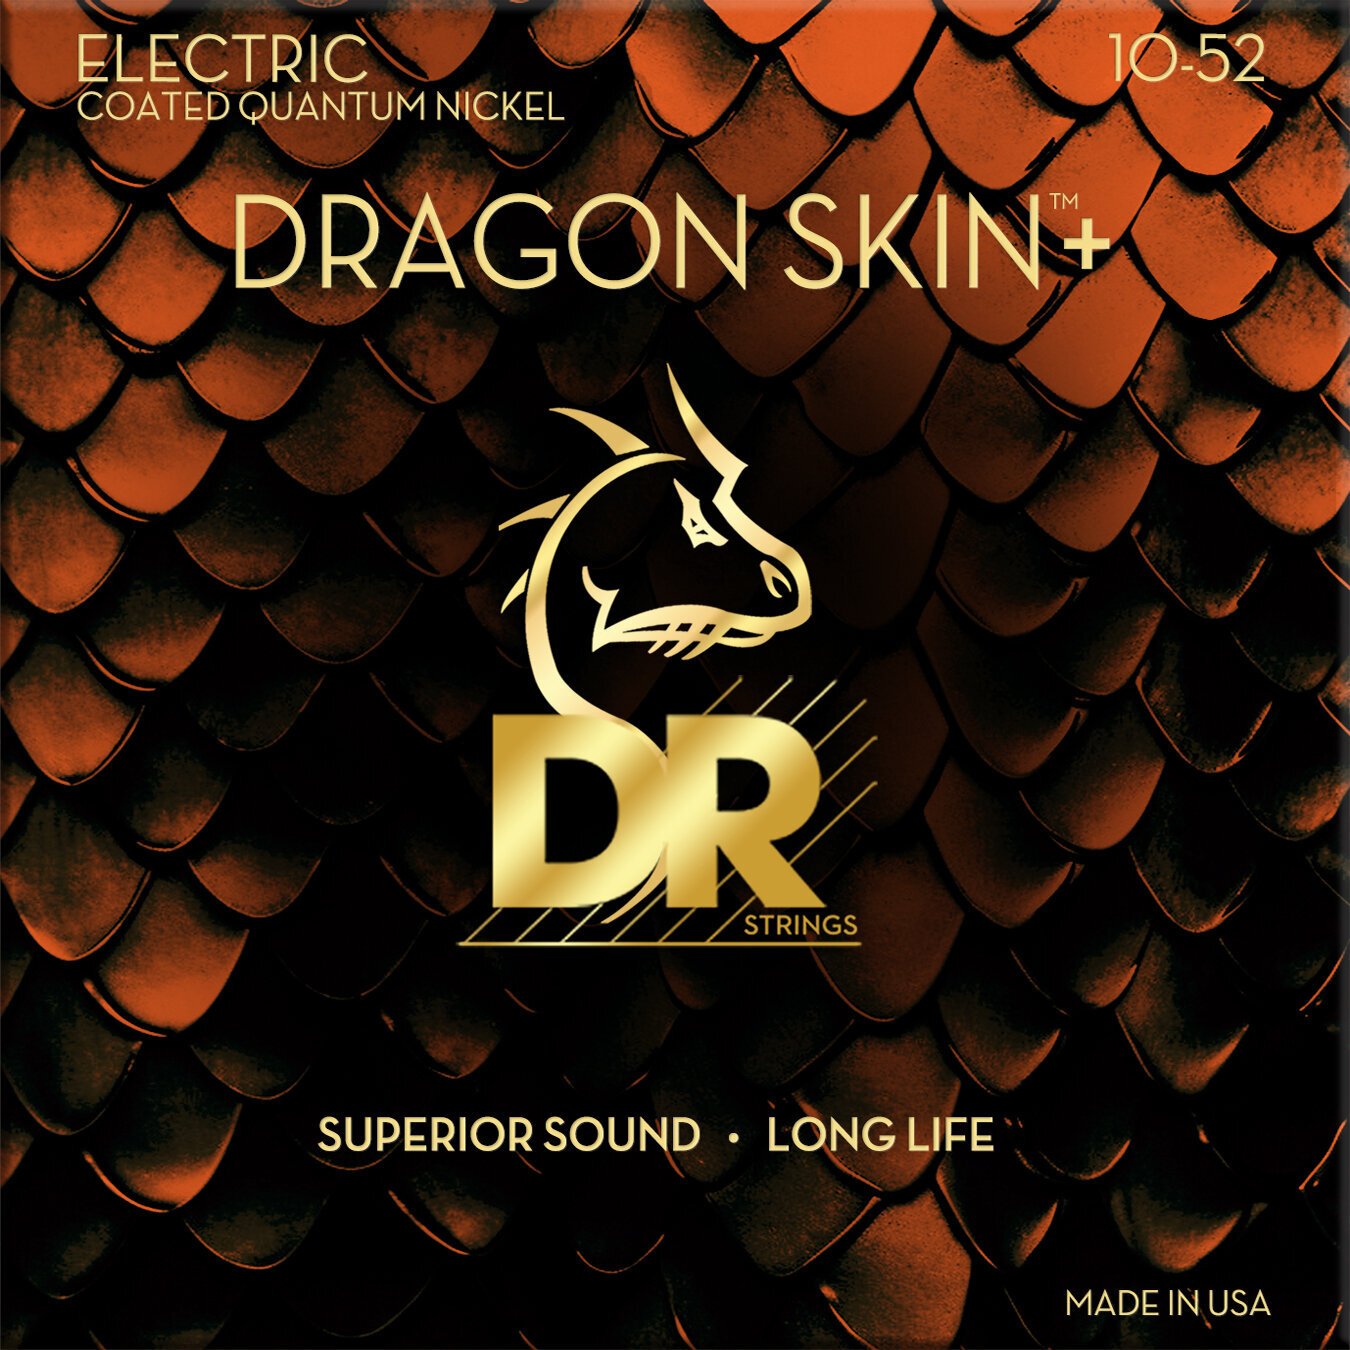 Snaren voor elektrische gitaar DR Strings Dragon Skin+ Coated Medium to Heavy 10-52